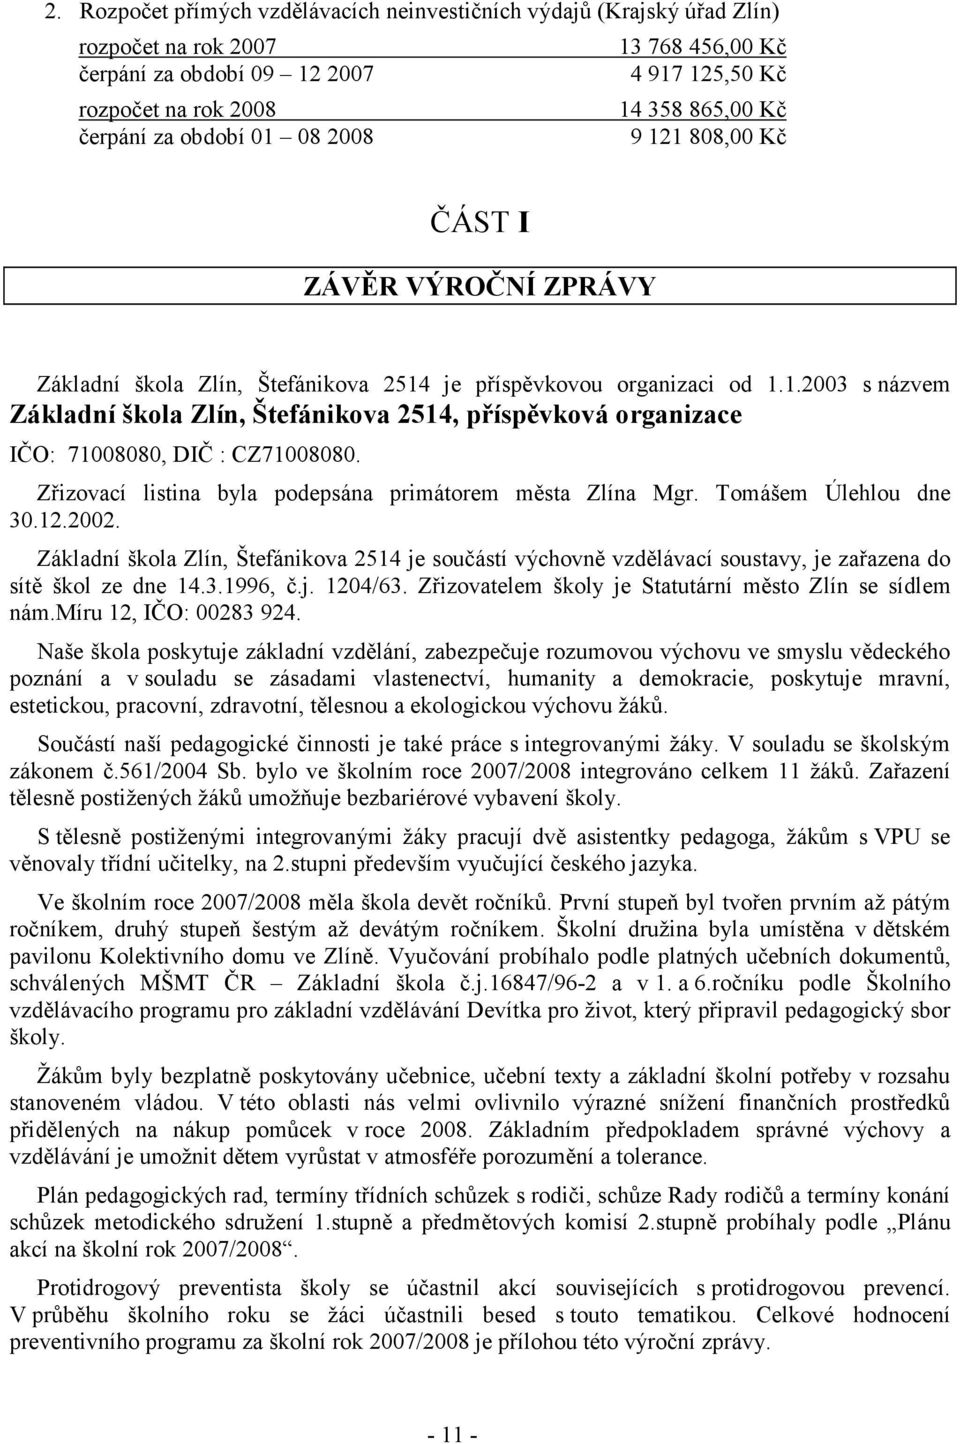 Zřizovací listina byla podepsána primátorem města Zlína Mgr. Tomášem Úlehlou dne 30.12.2002.